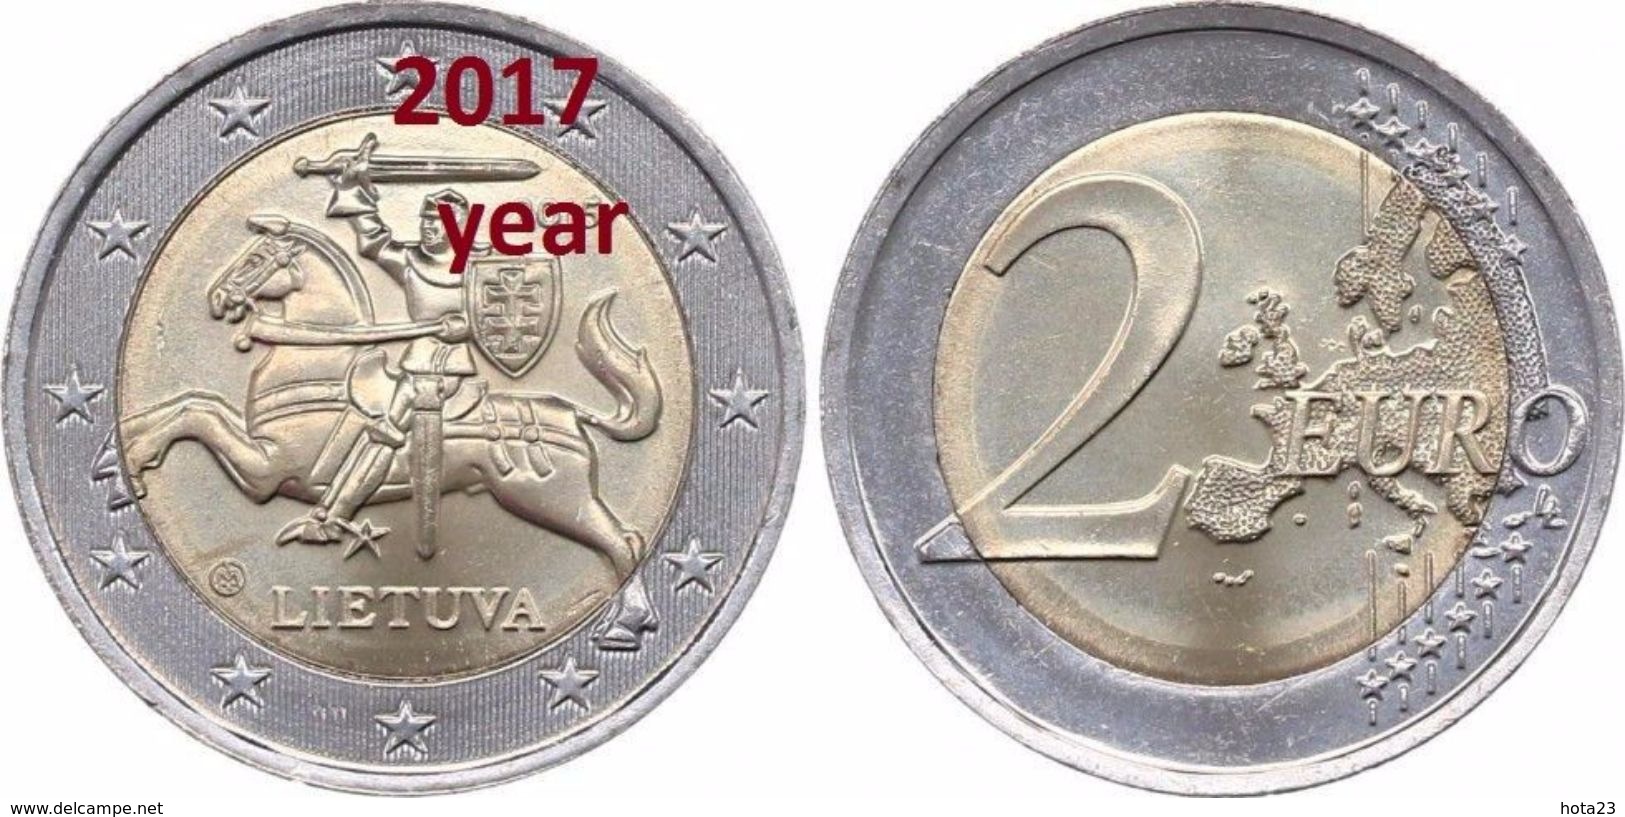 Lithuania Litauen 2017 2 Euro Kursmünze UNC RRR RARE Coin - Rare Keydate FROM MINT ROLL UNC - Litauen